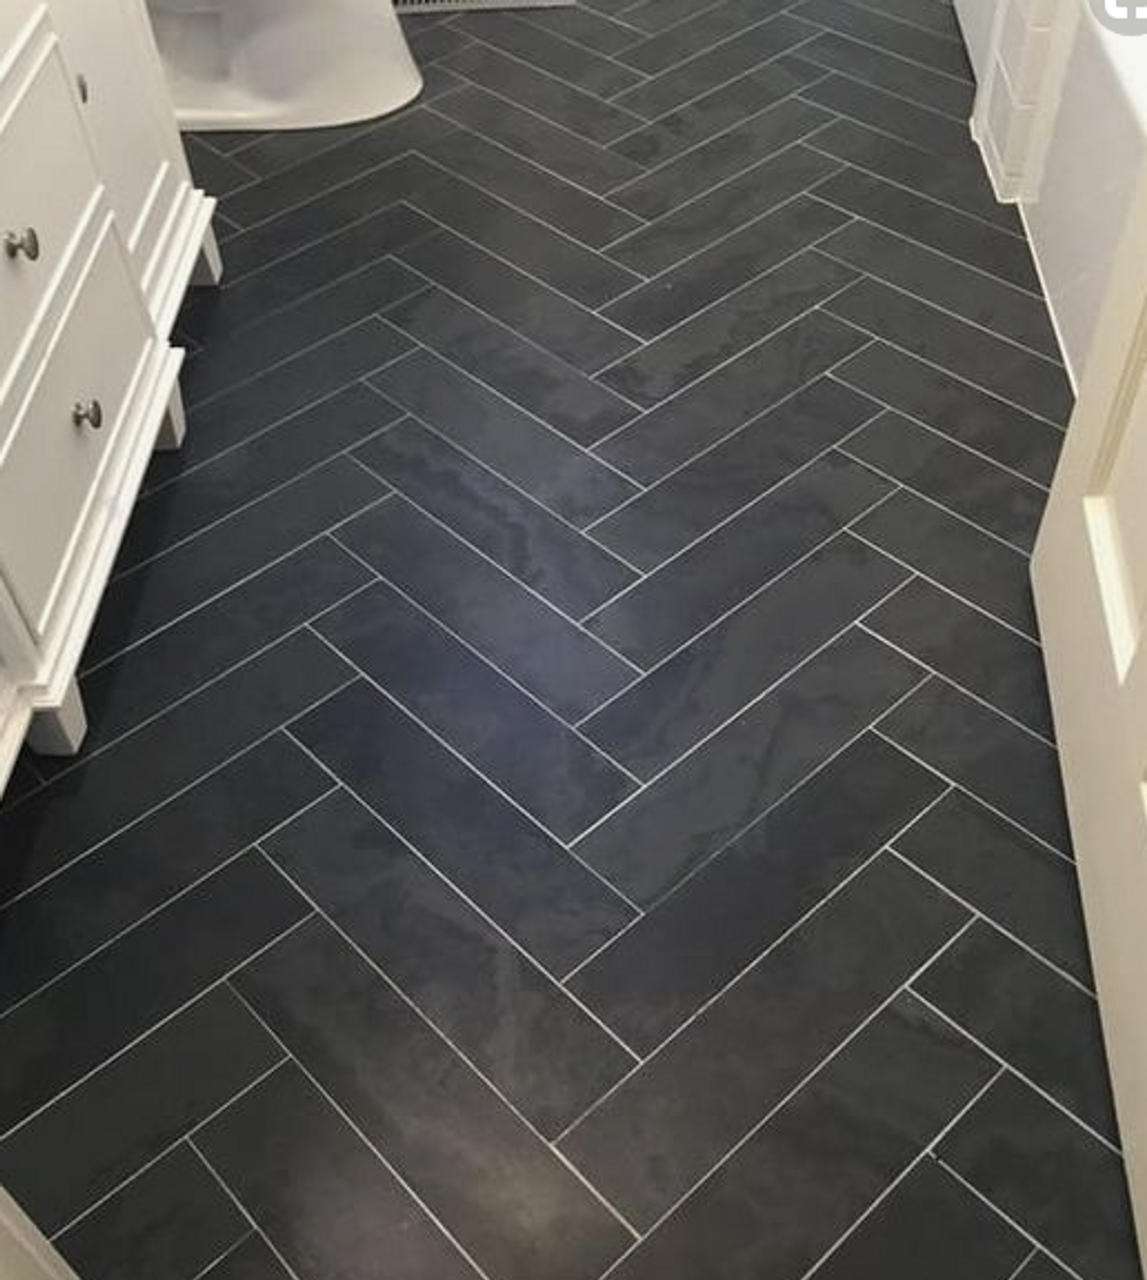 Brazillian Black 6x24 Herringbone Tile Floors Black Porcelain Tiles